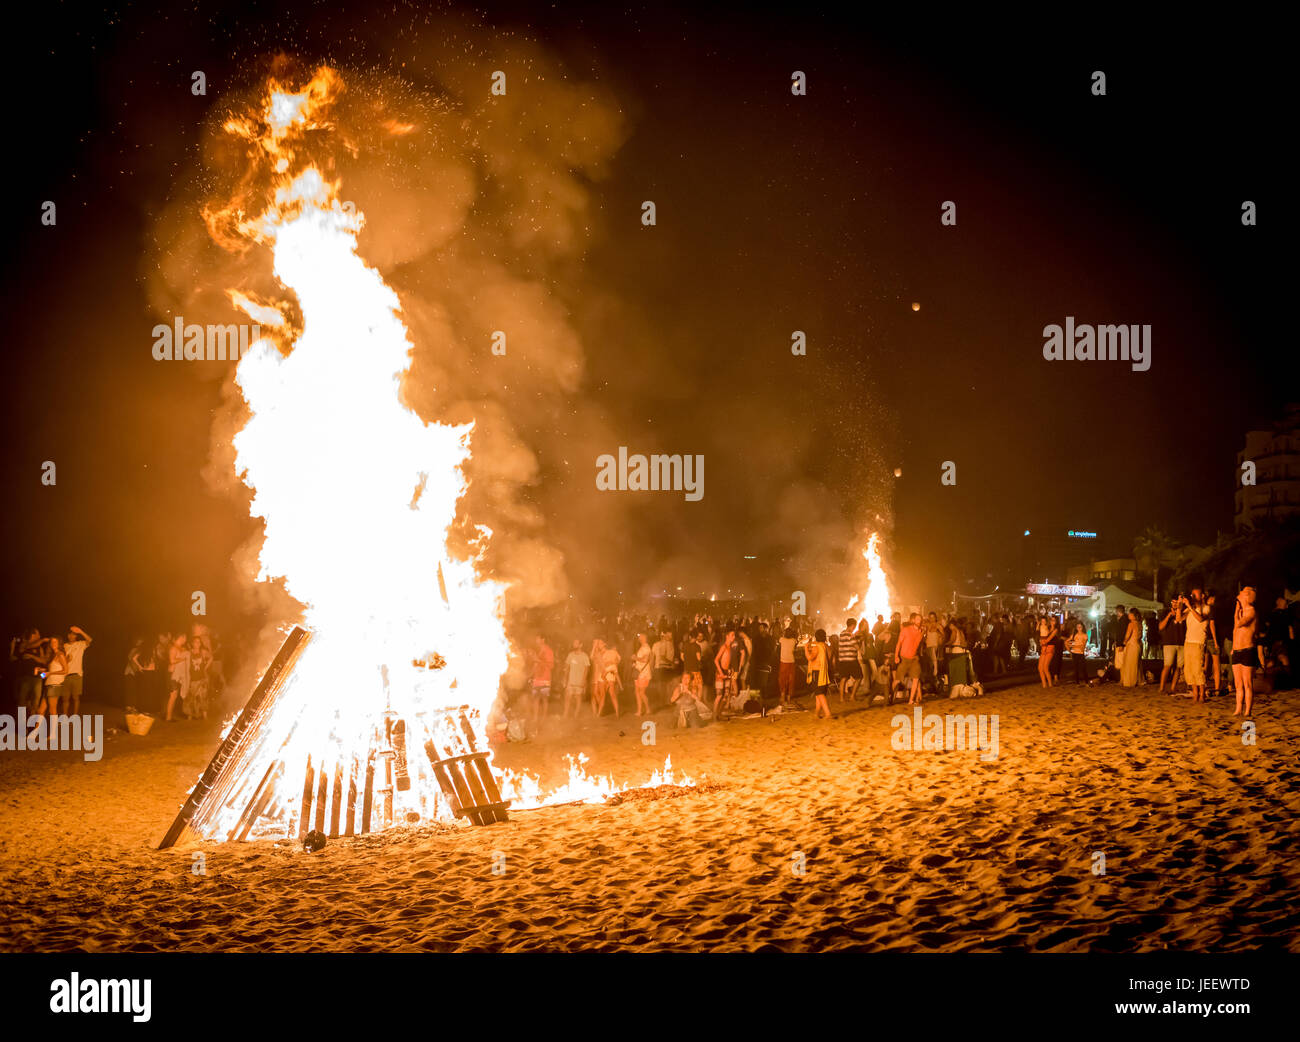 MARBELLA, España - Junio 23, 2017: Celebración de San Juan en playa en Marbella, Costa del Sol, España. Se encienden hogueras y Flaming linternas liberados a Fotografía stock - Alamy